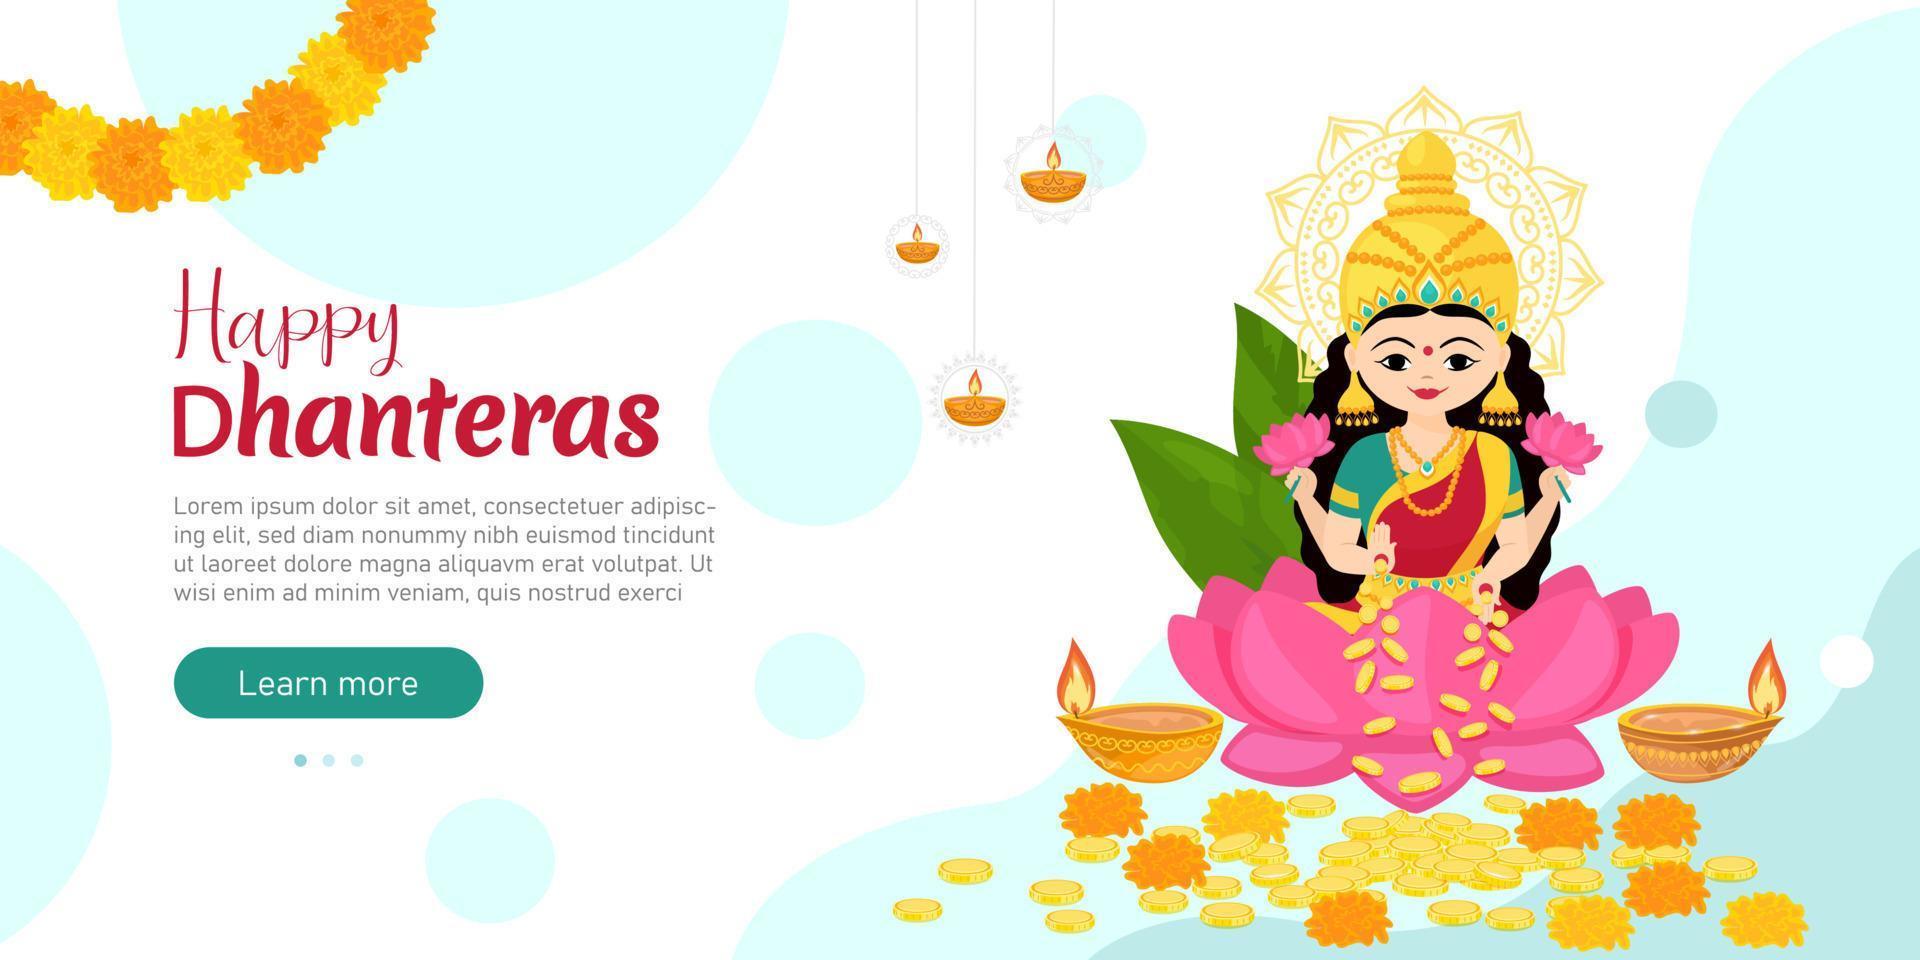 deusa lakshmi sentada no lótus com dinheiro e flores nas mãos. design para modelo de banner de férias. festas tradicionais indianas. ilustração vetorial dos desenhos animados. vetor